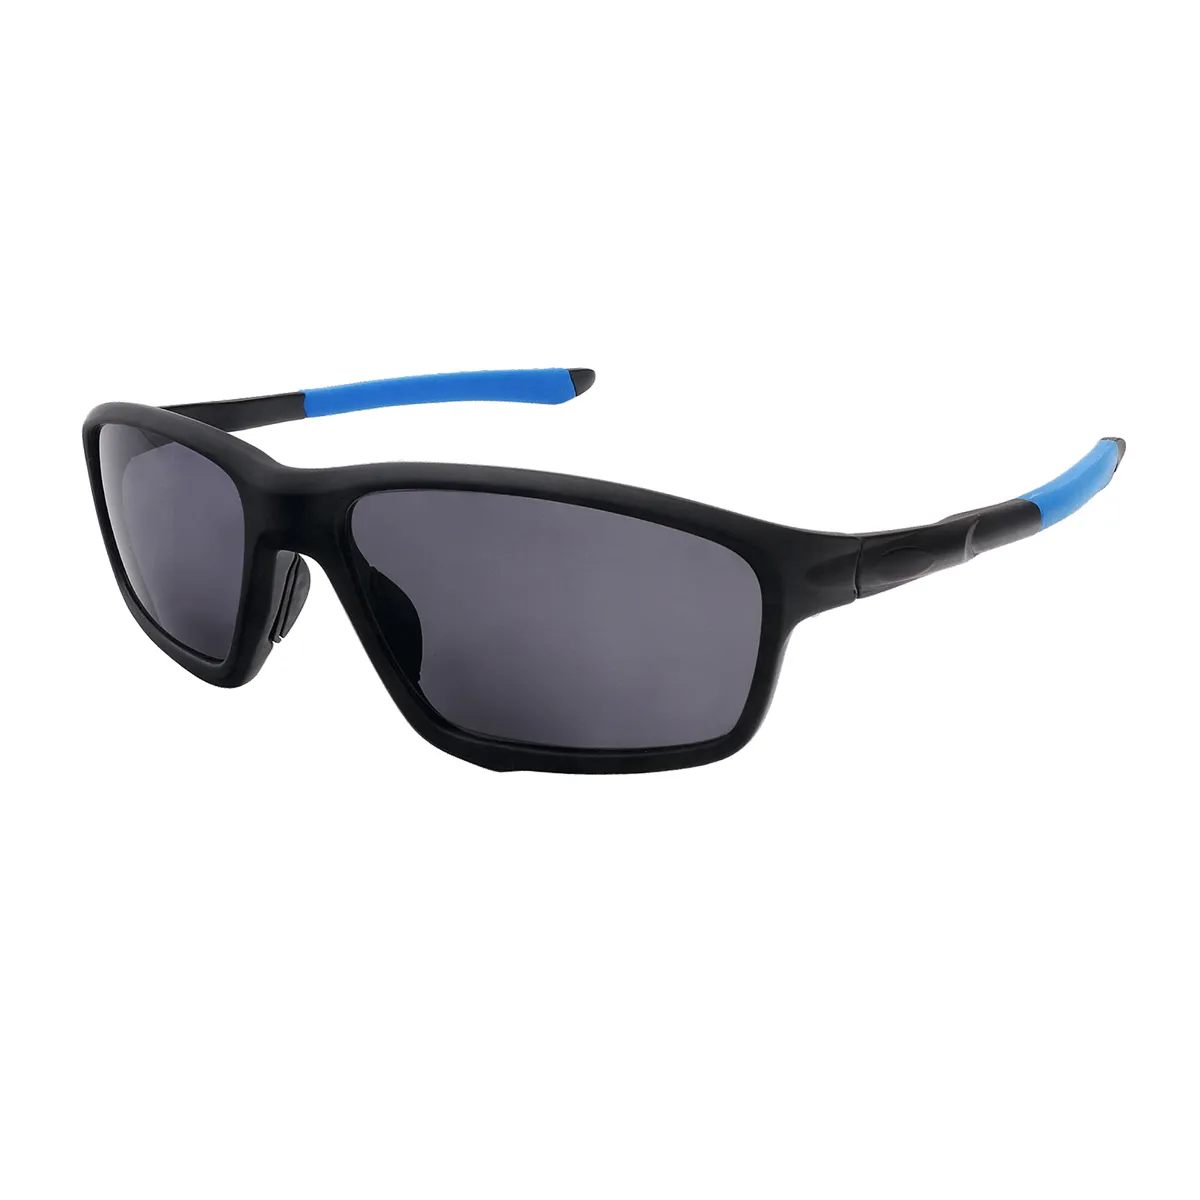 Luman - Rectangle Blue Sunglasses for Men & Women